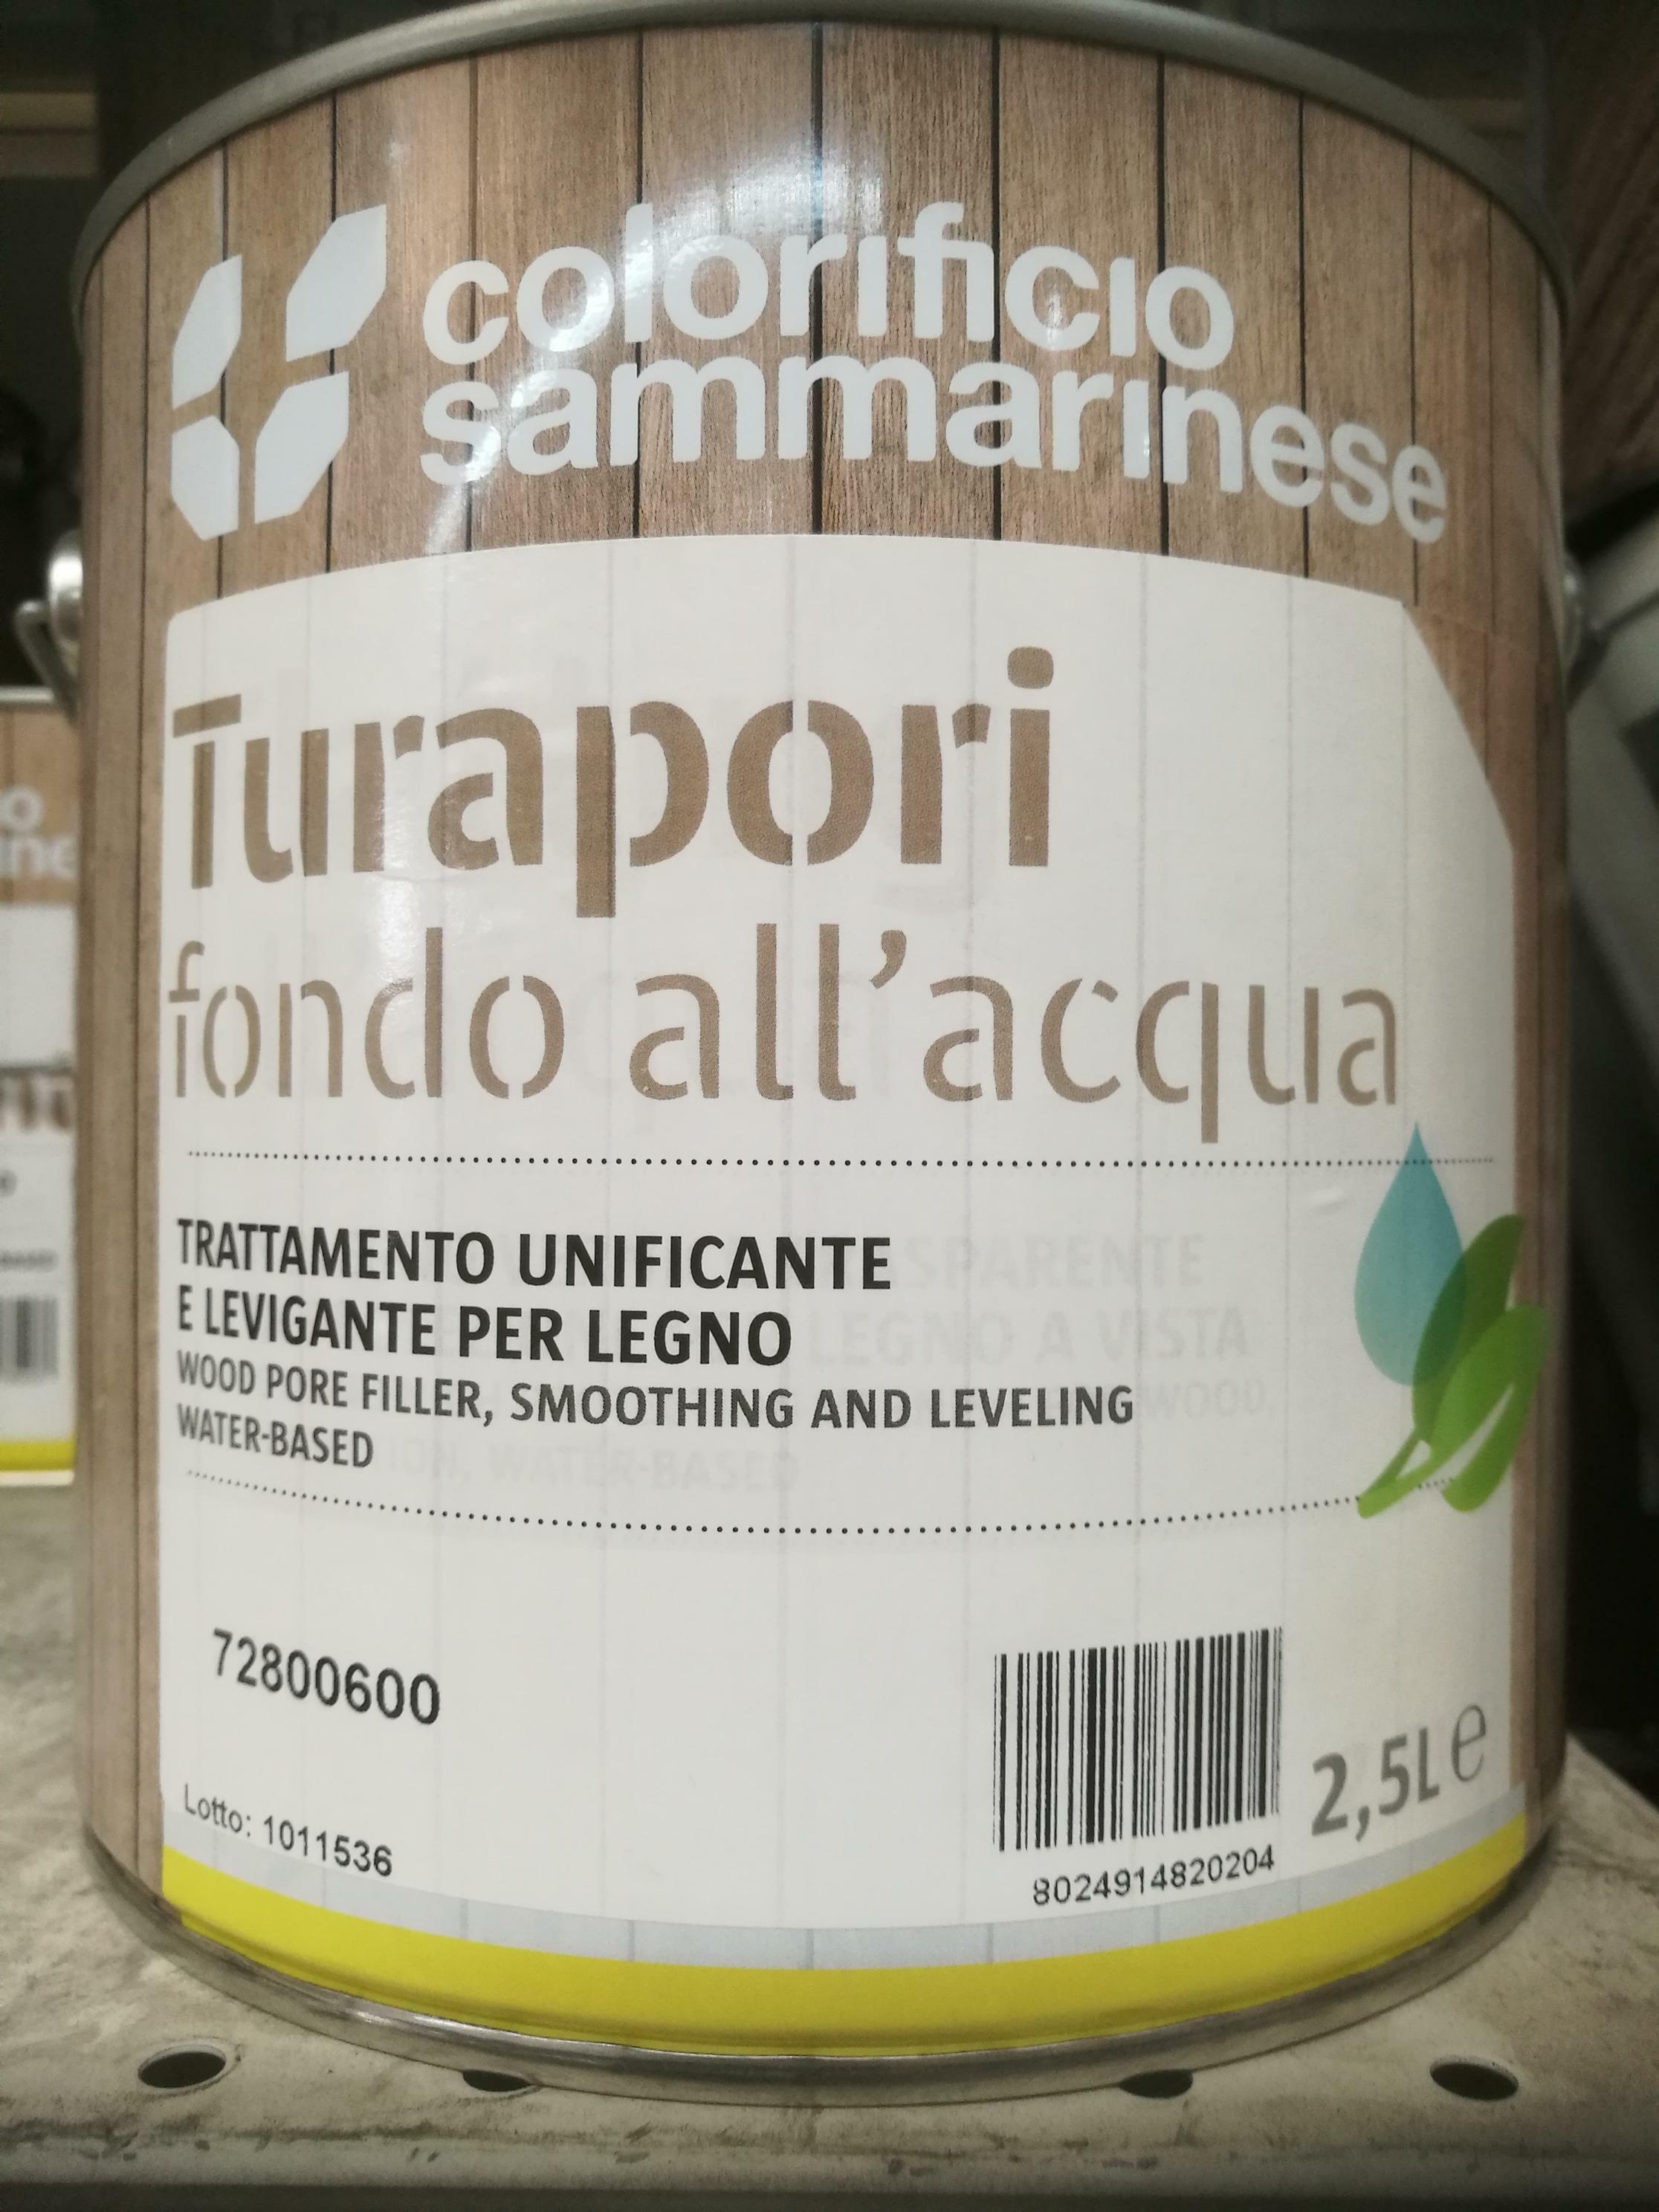 sammarinese sammarinese sanolegno fondo turapori carteggiabile 2,5 litri all'acqua